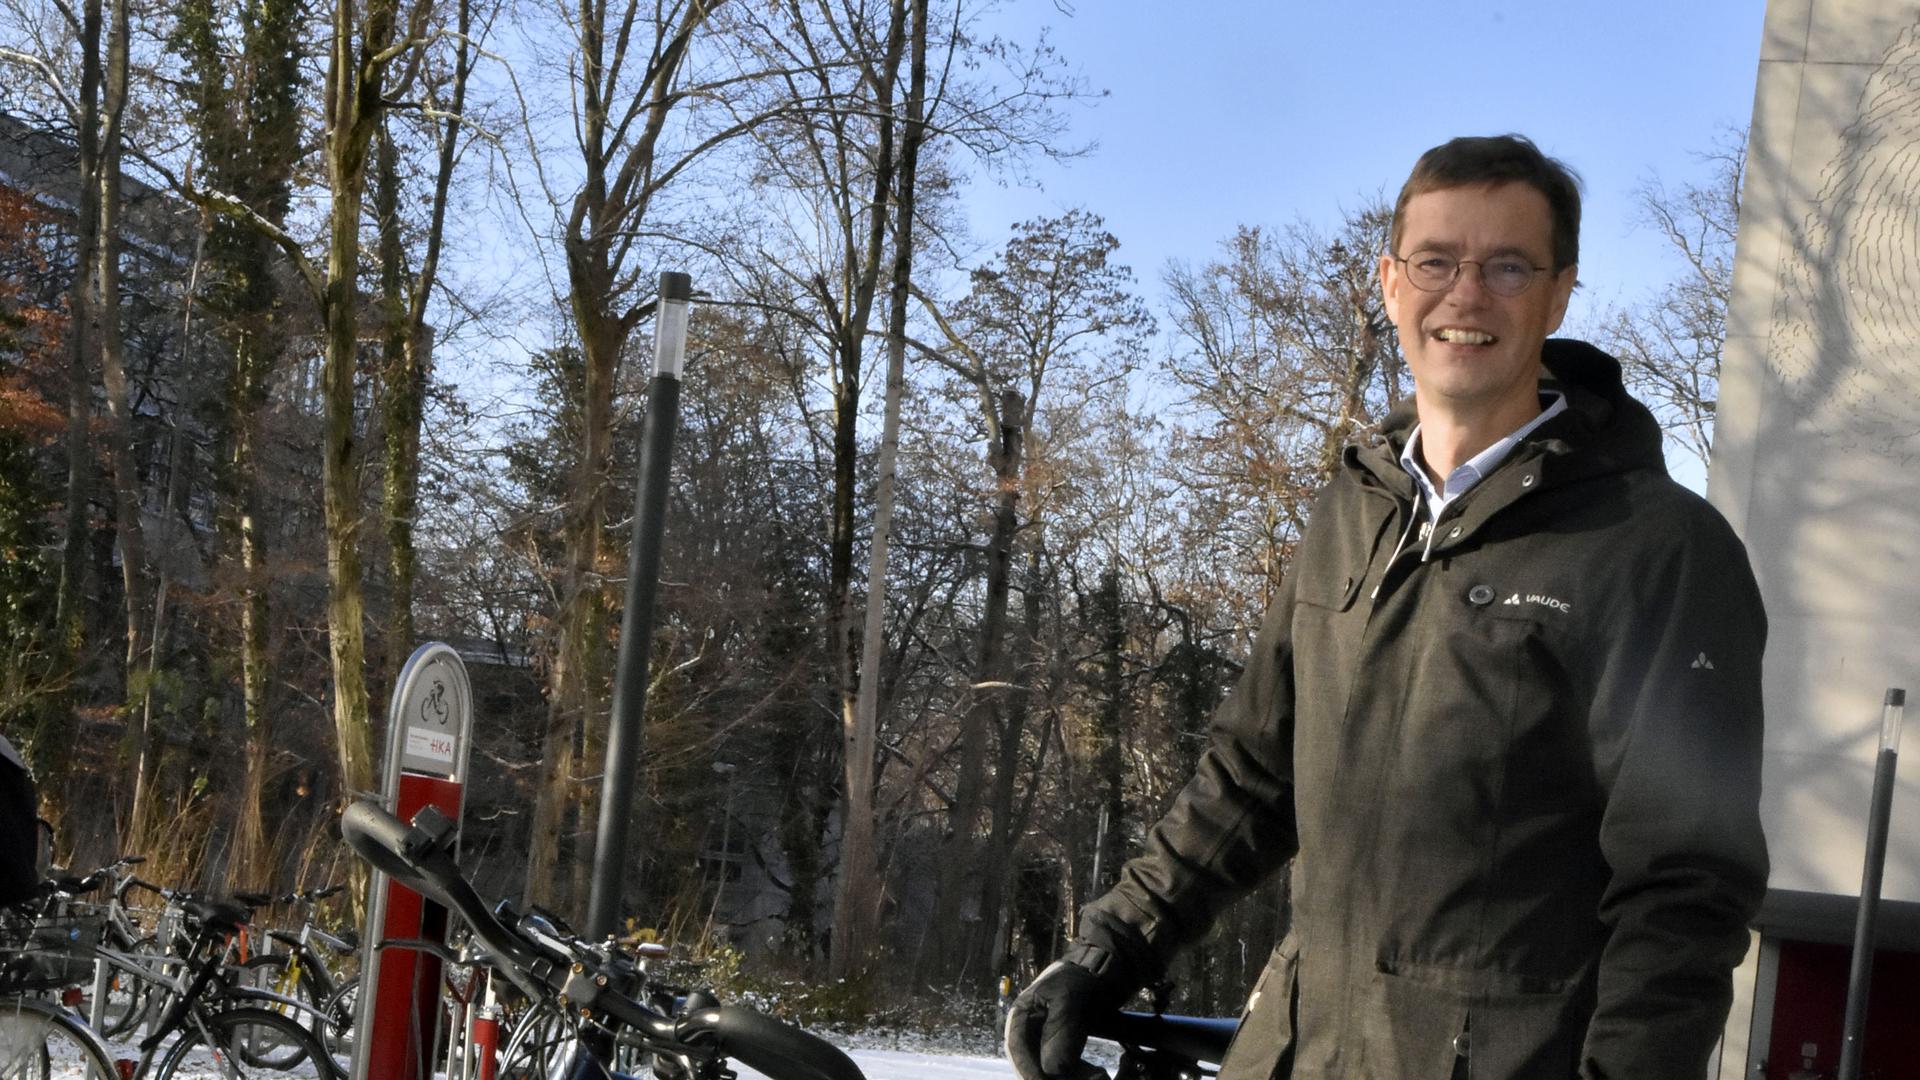 Beste Bedingungen zum Forschen: Christian Holldorb und sein Team untersuchten in den vergangenen zwei Wintern die Situation für Radfahrer in den kalten Monaten.